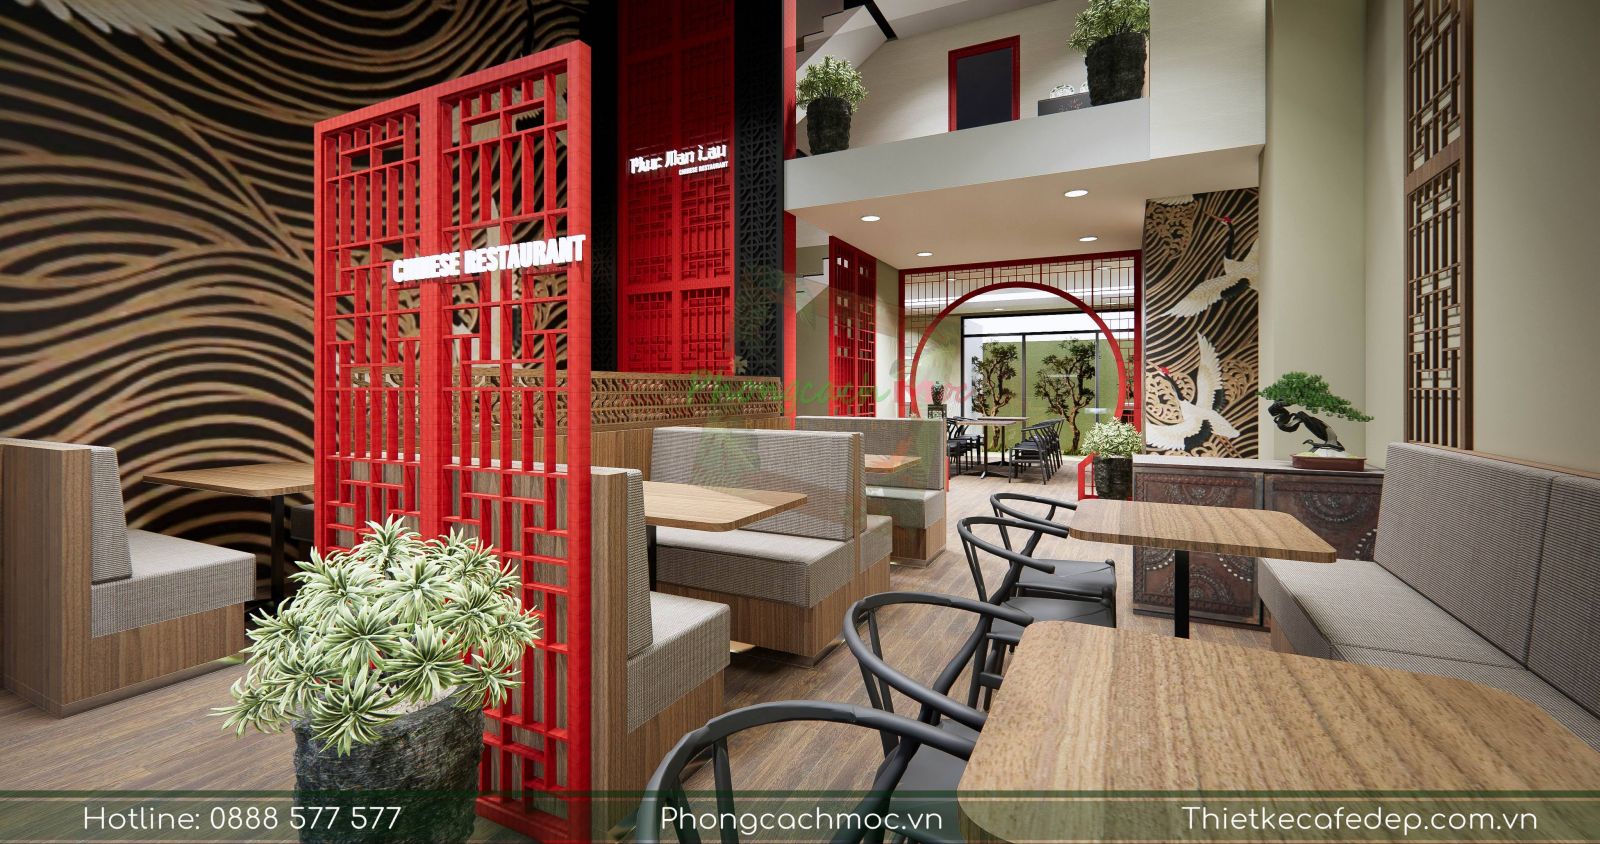 Thiết kế nhà hàng Hongkong Phúc Mãn Lầu - Quận 7 | Phong Cách Mộc